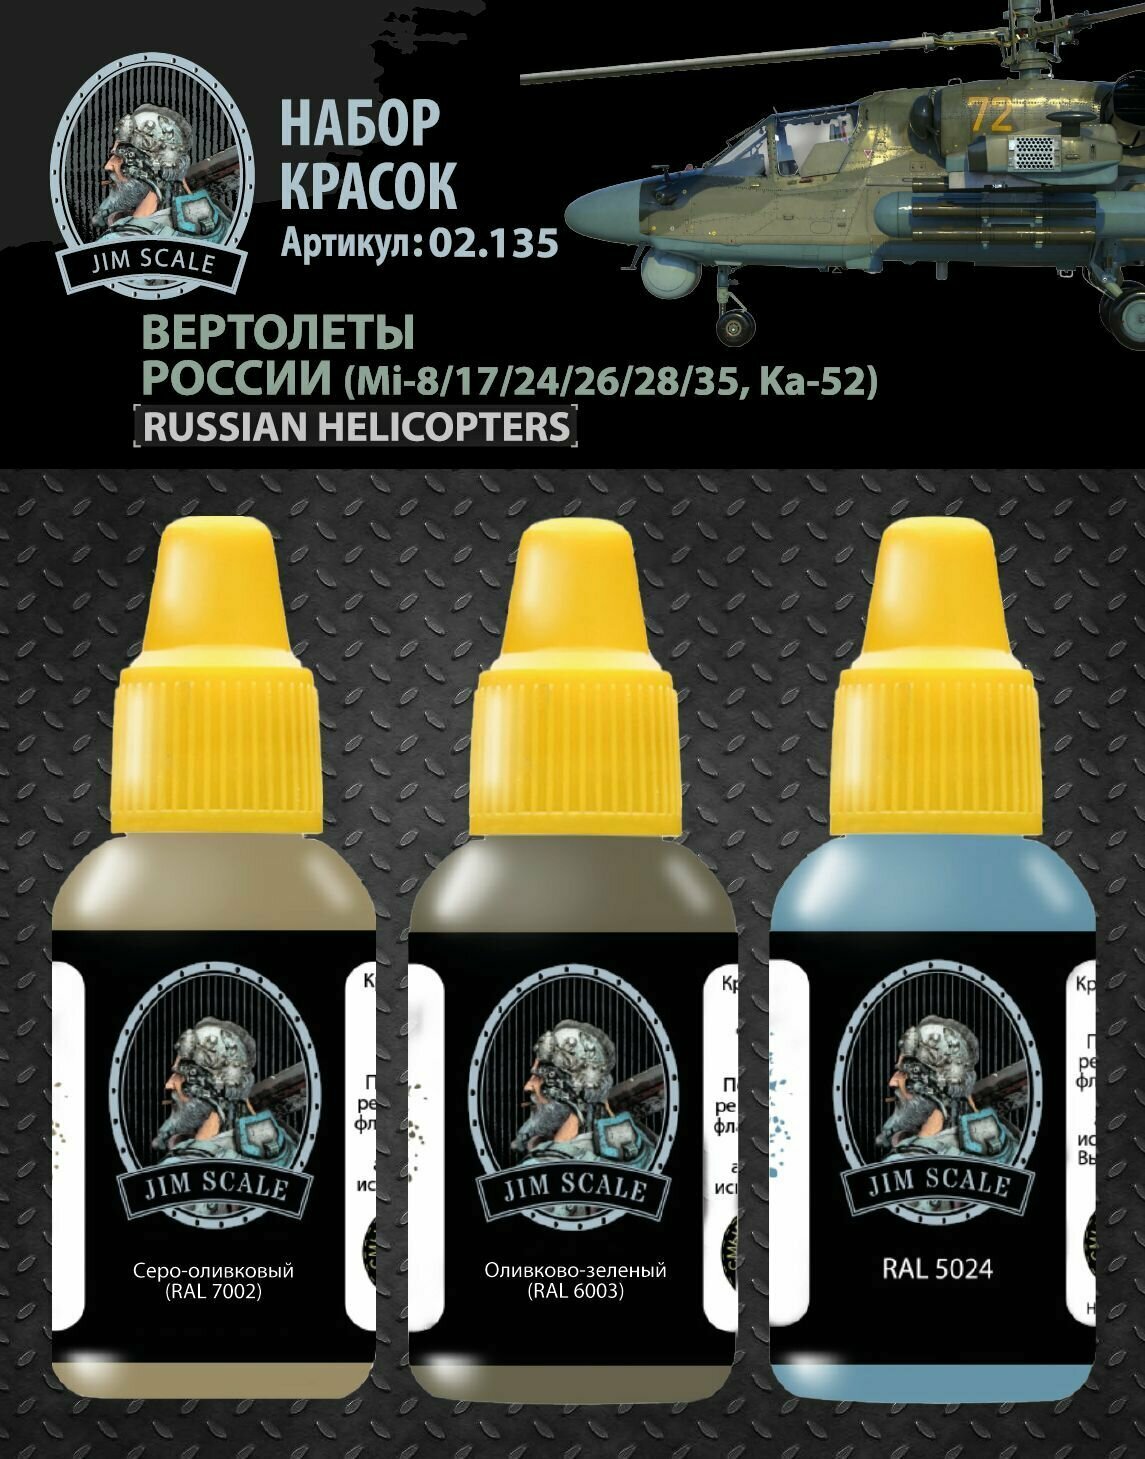 Набор красок Jim Scale Вертолеты России (Mi-8/17/24/26/28/35, Ka-52), 3 шт по 18 мл